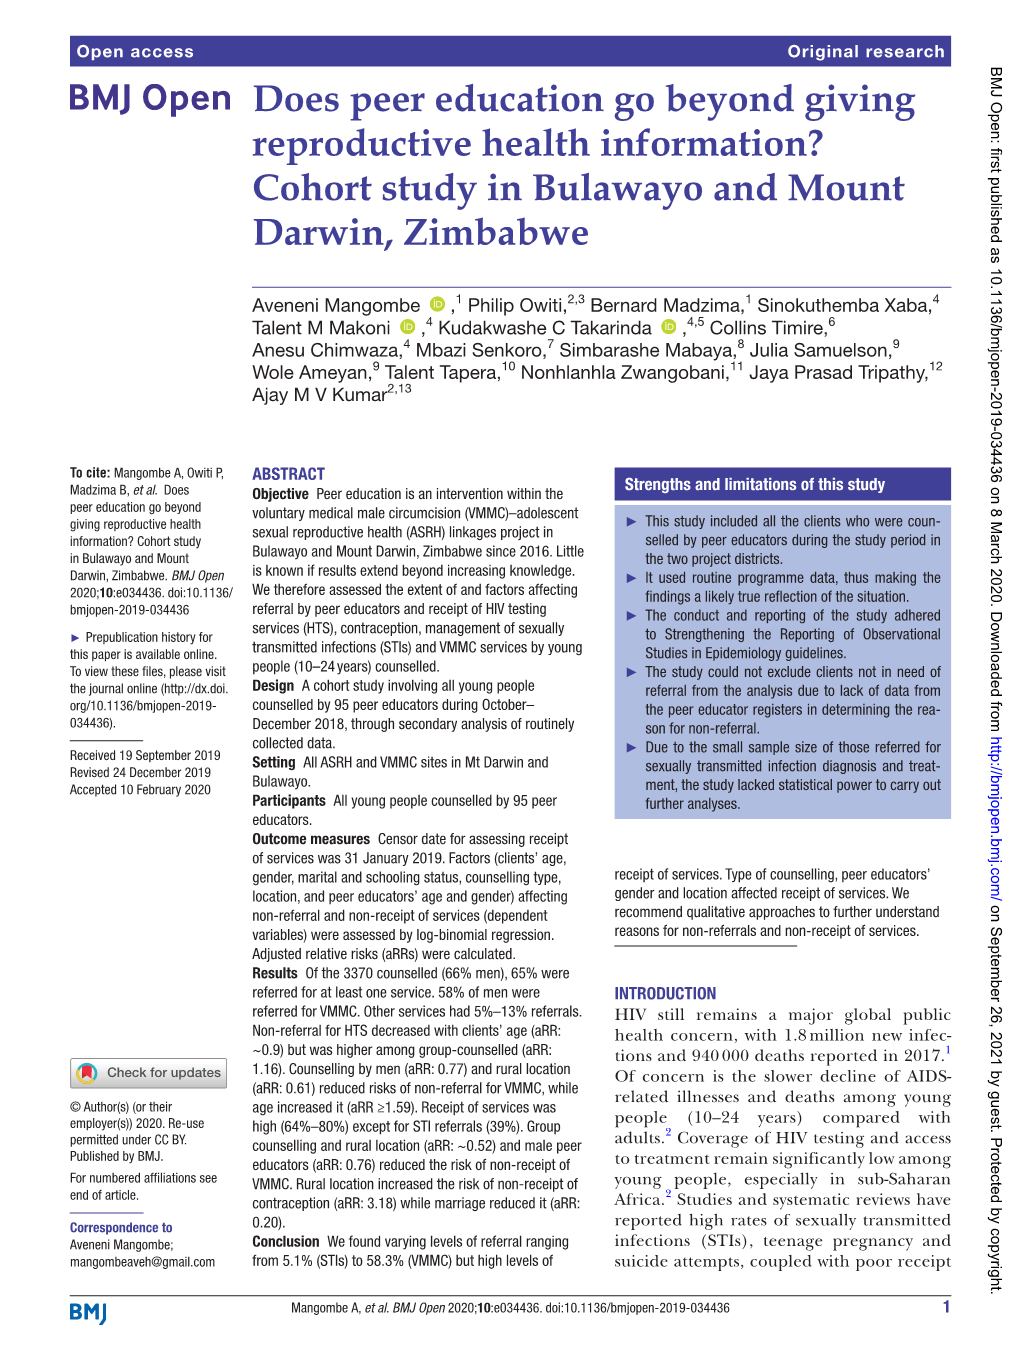 Cohort Study in Bulawayo and Mount Darwin, Zimbabwe